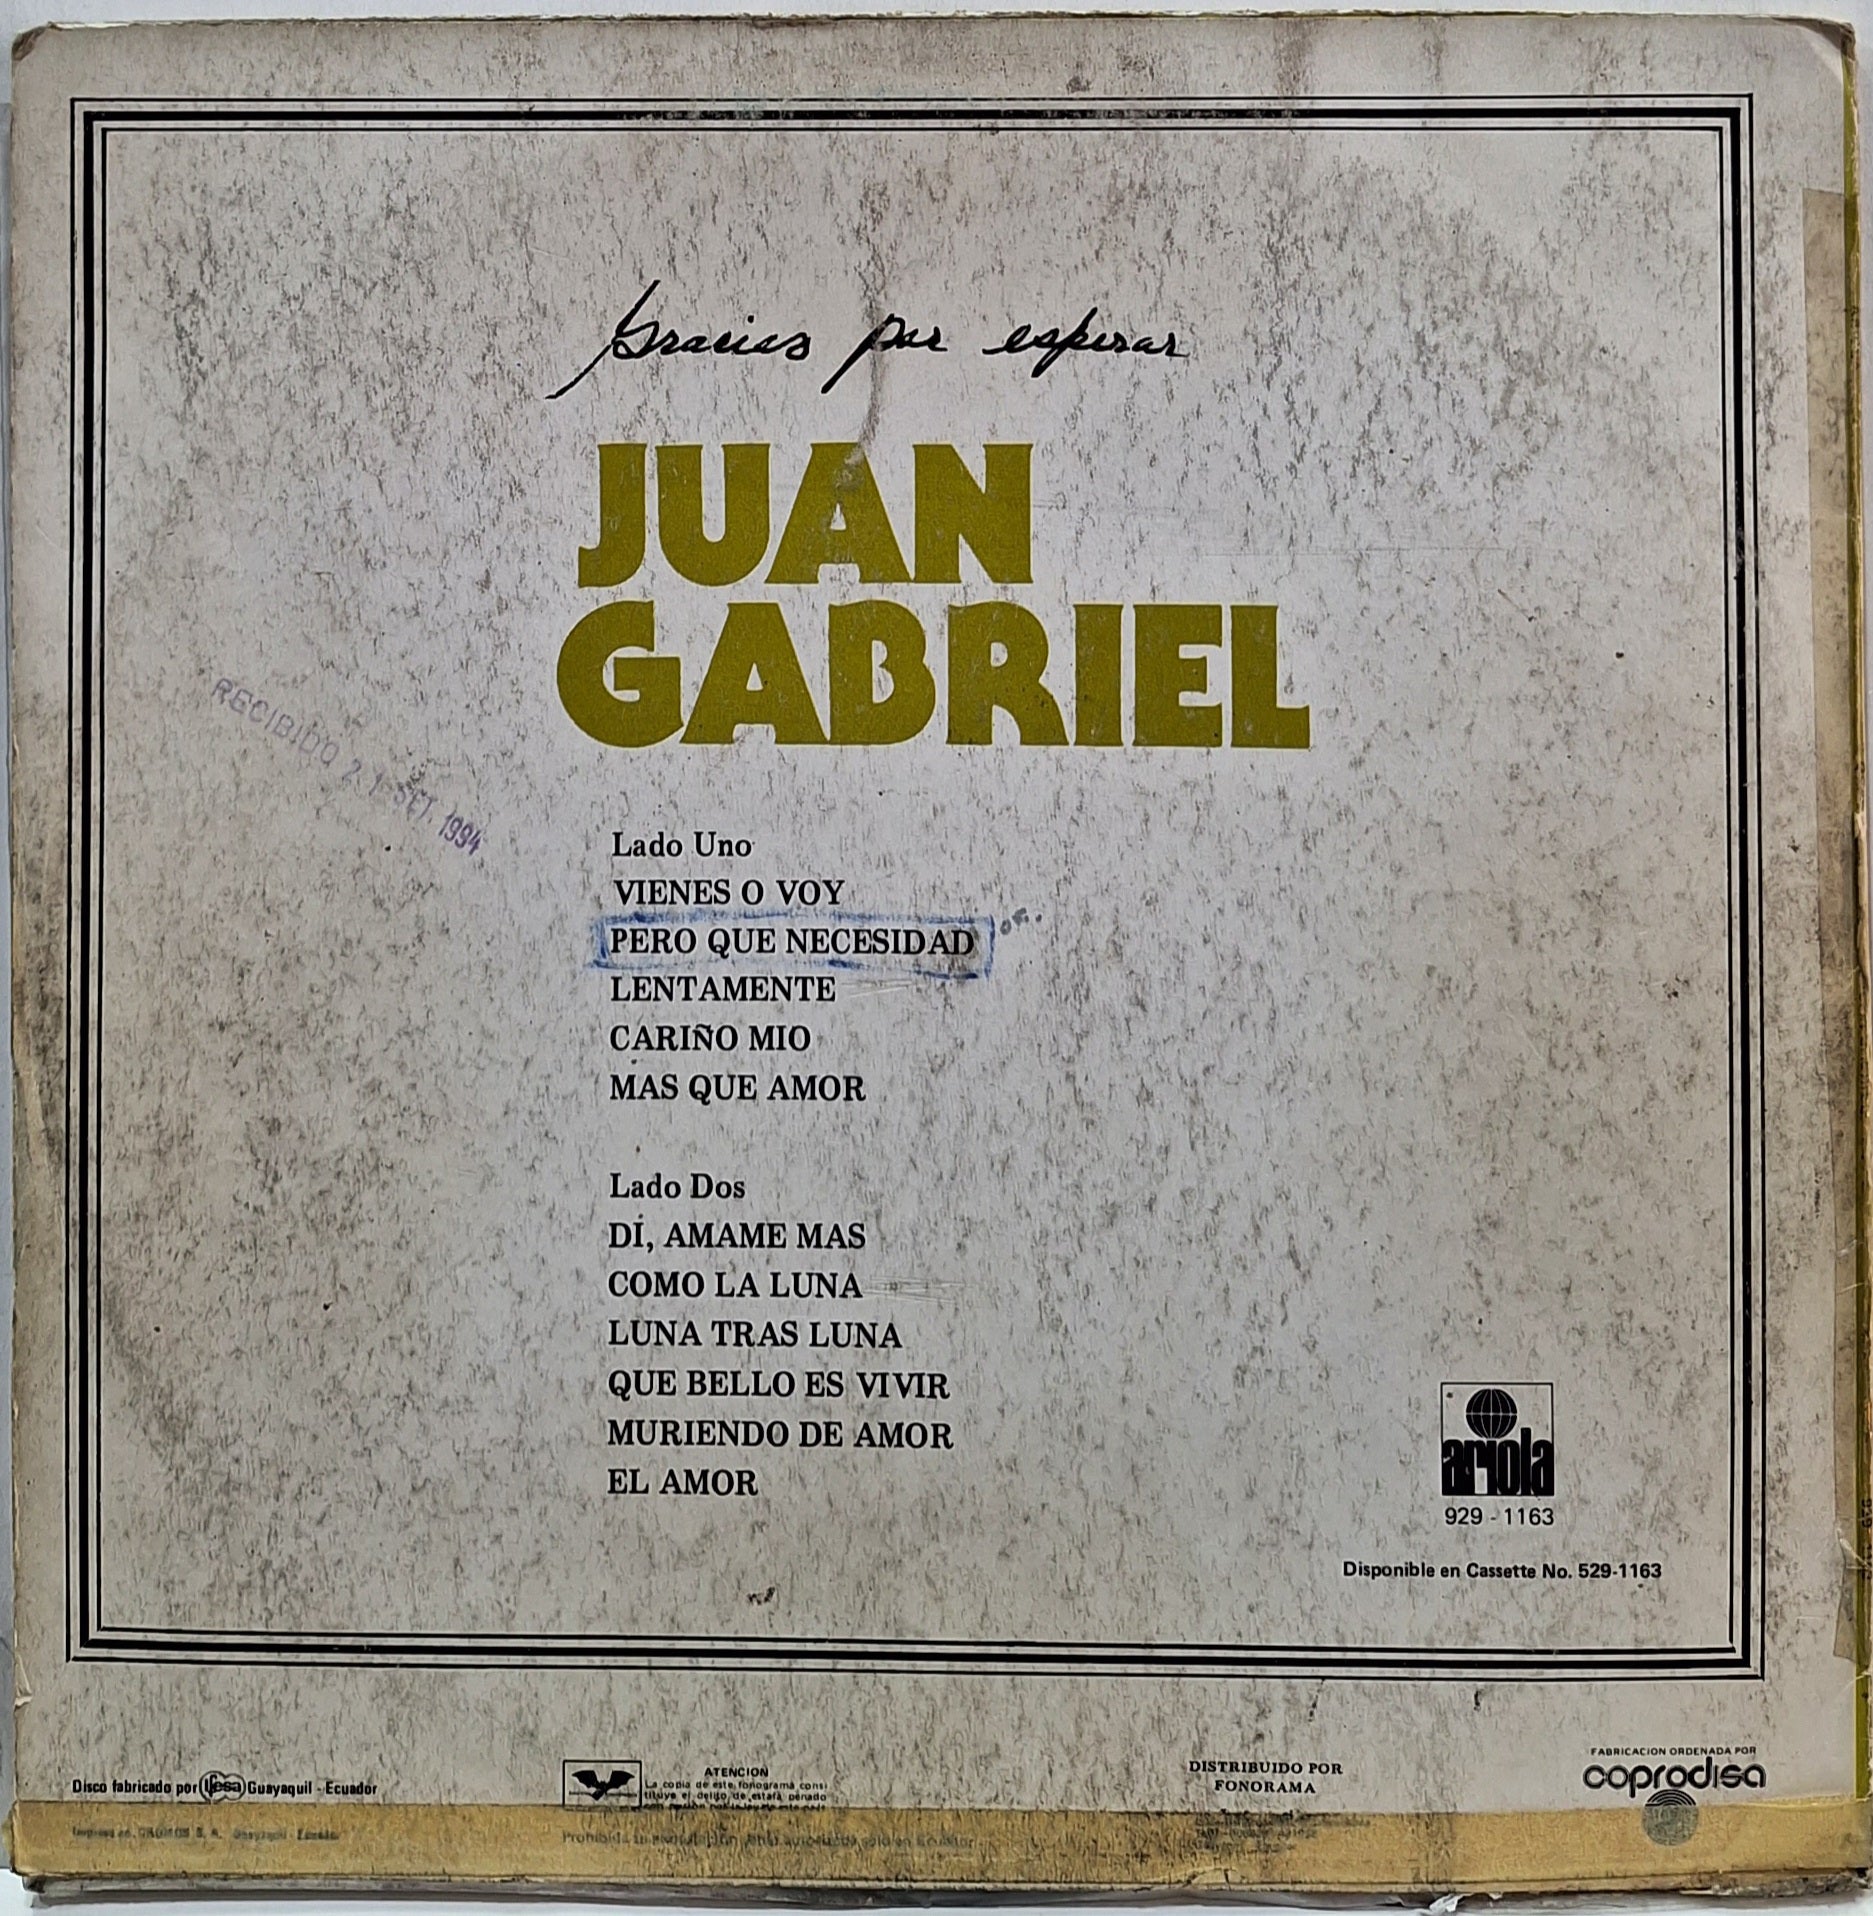 Gracias por Esperar - Album by Juan Gabriel